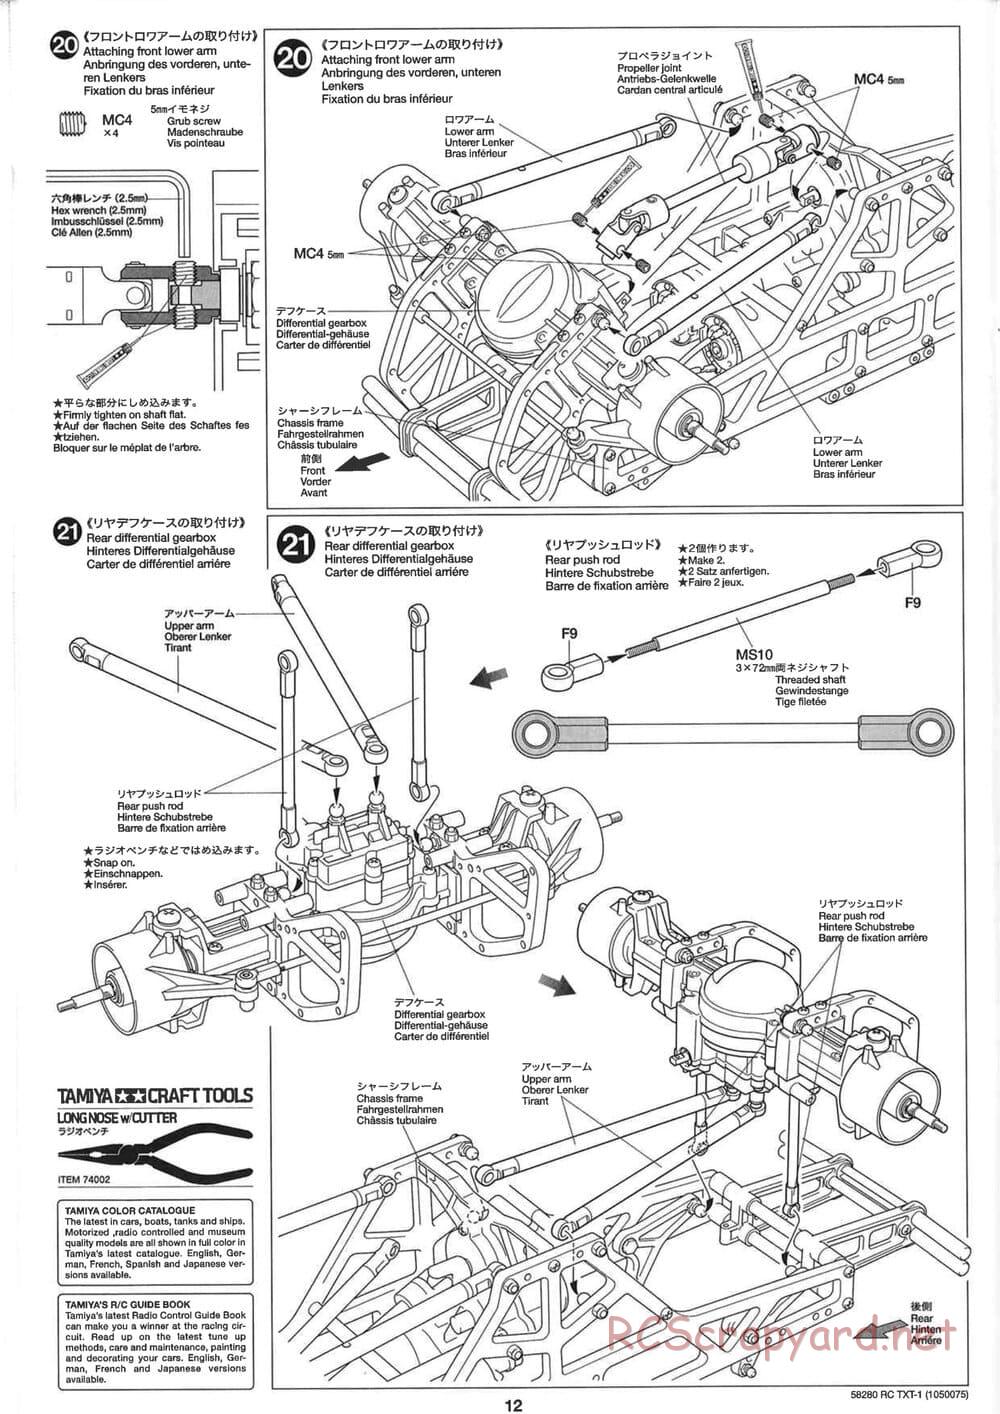 Tamiya - TXT-1 (Tamiya Xtreme Truck) Chassis - Manual - Page 12